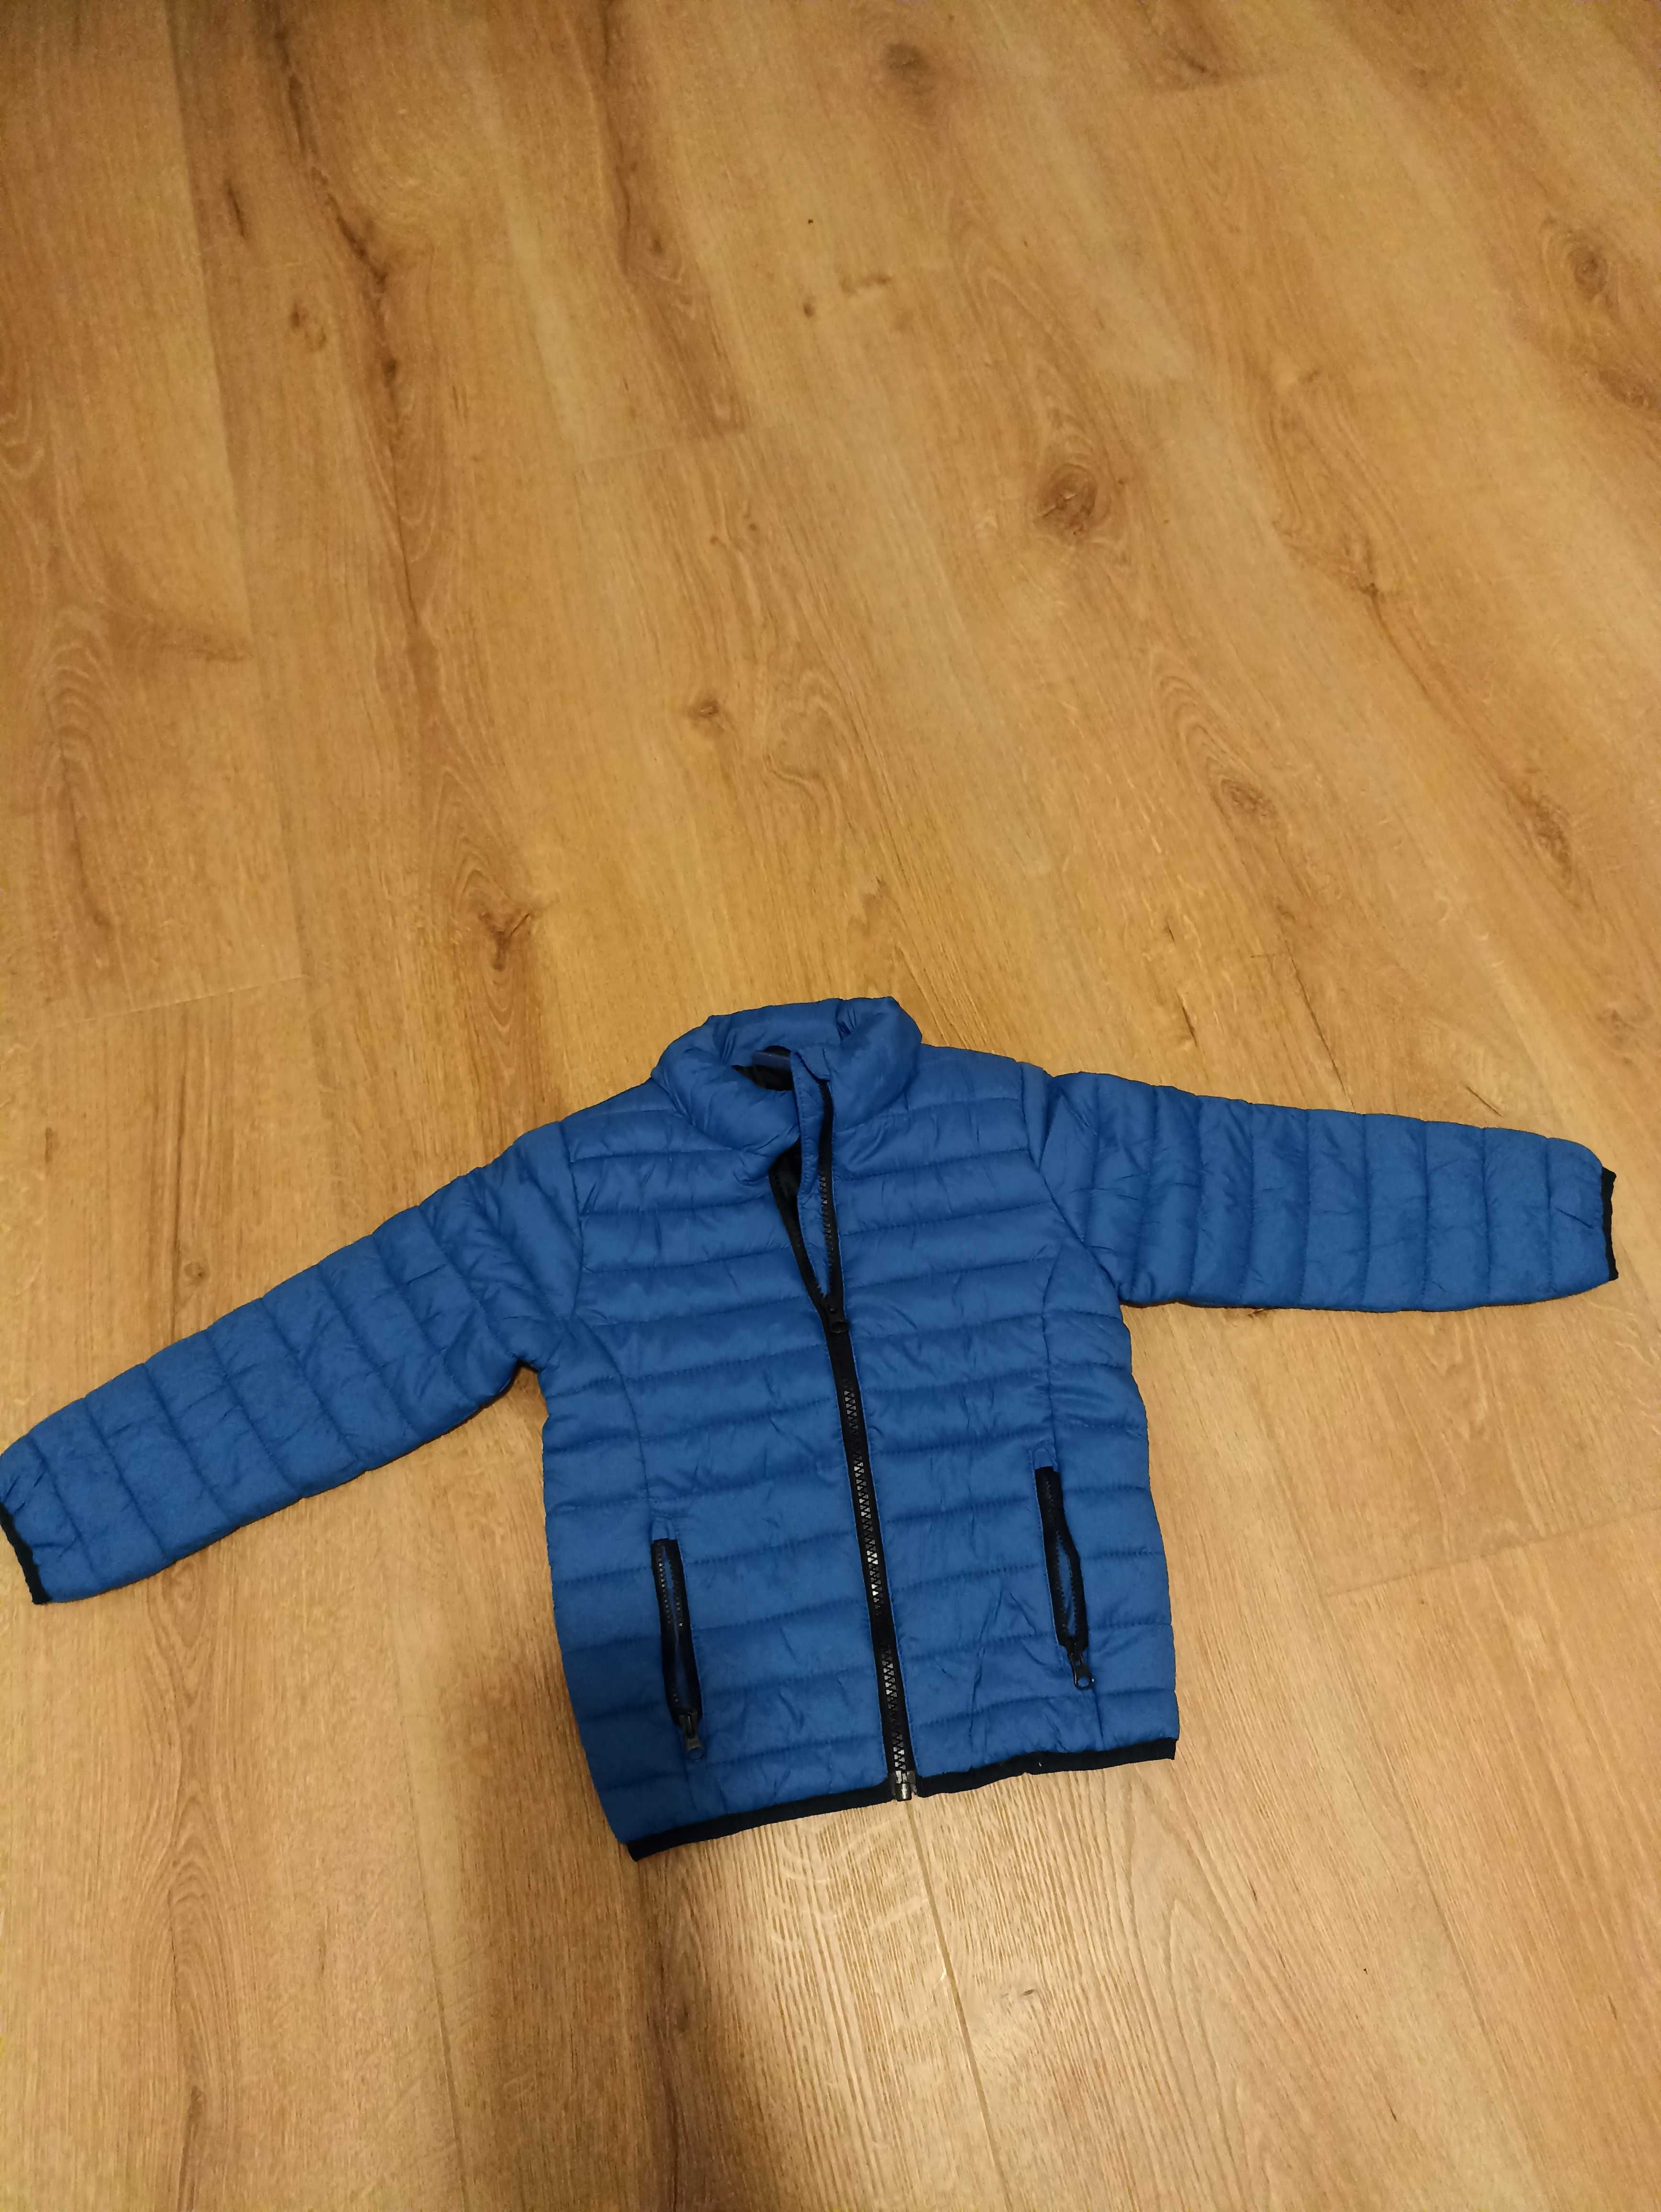 Niebieska kurtka przejściowa dla chłopca rozmiar 104